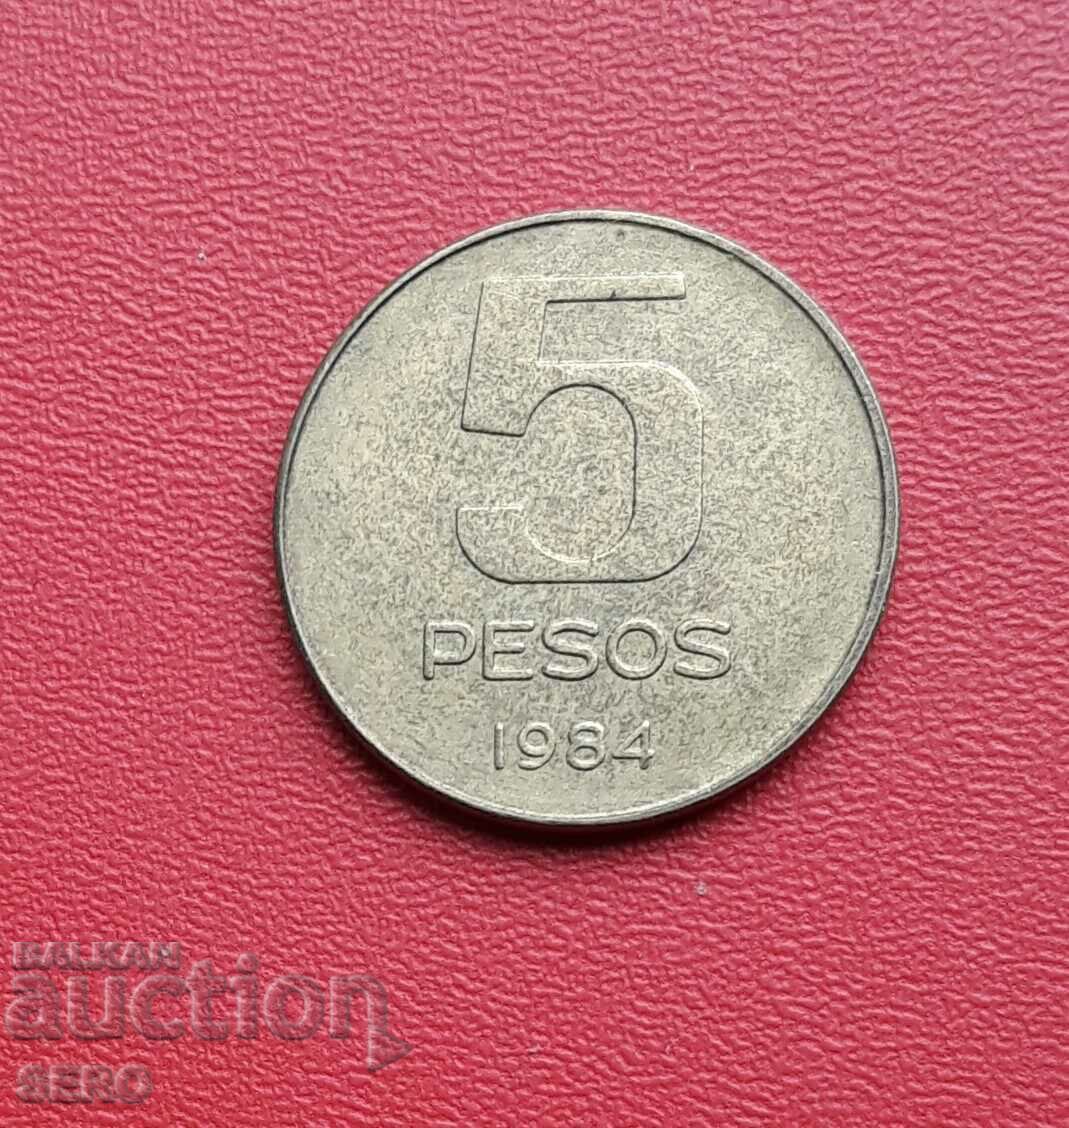 Argentina - 5 pesos 1984